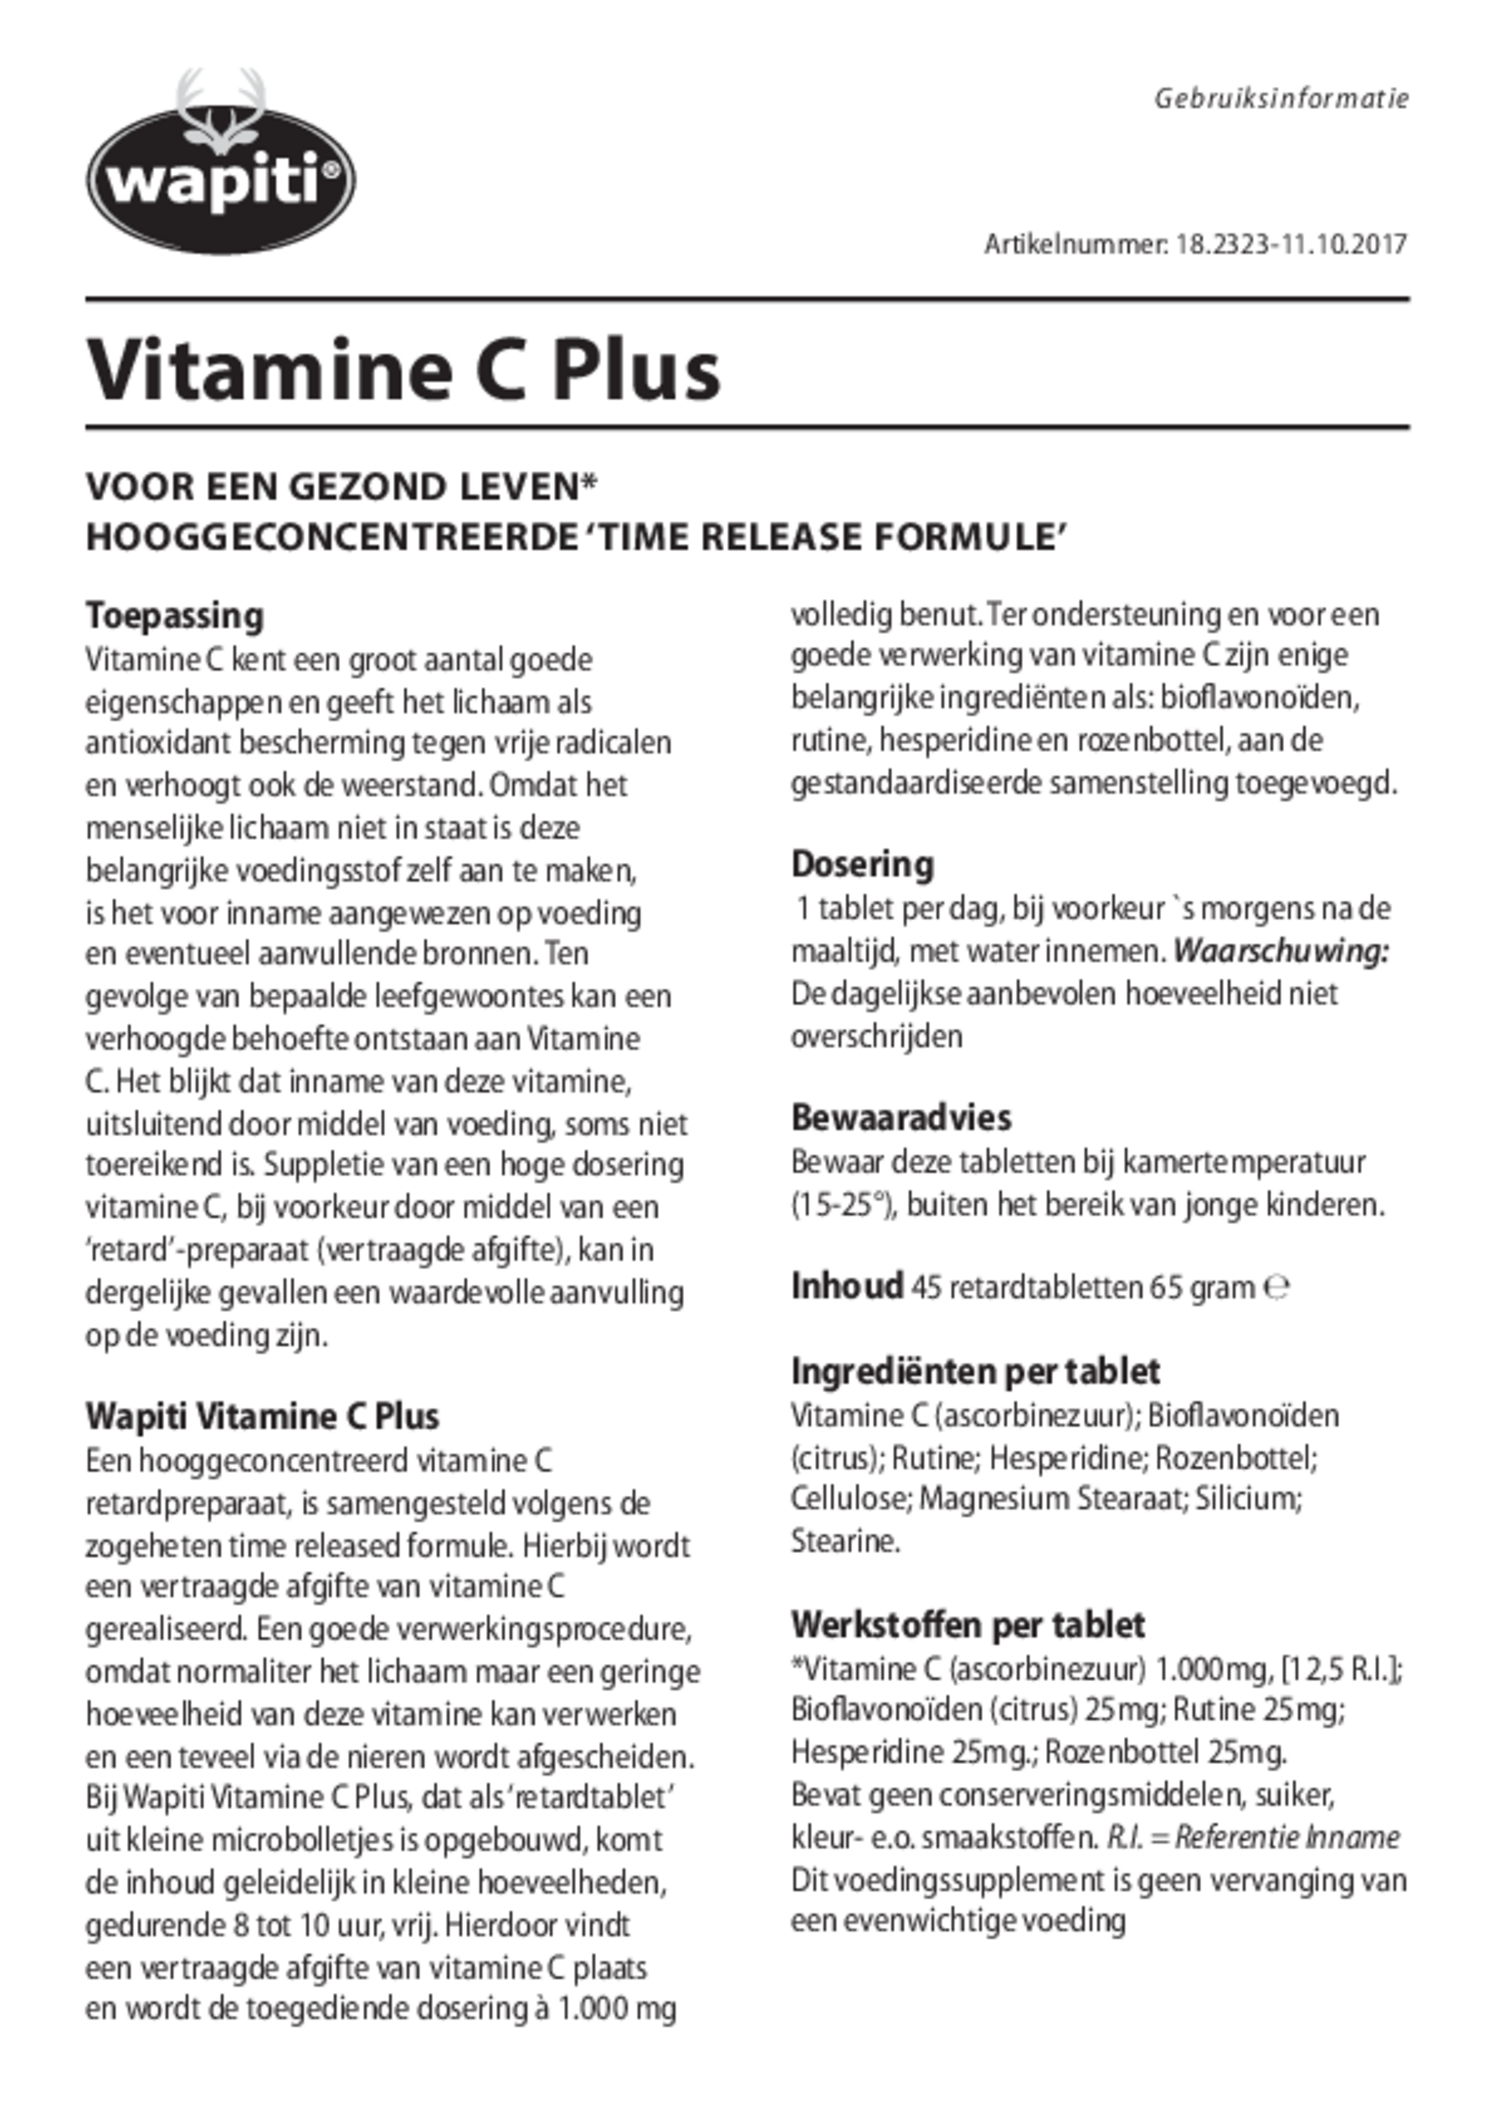 Vitamine C Plus Tabletten afbeelding van document #1, gebruiksaanwijzing